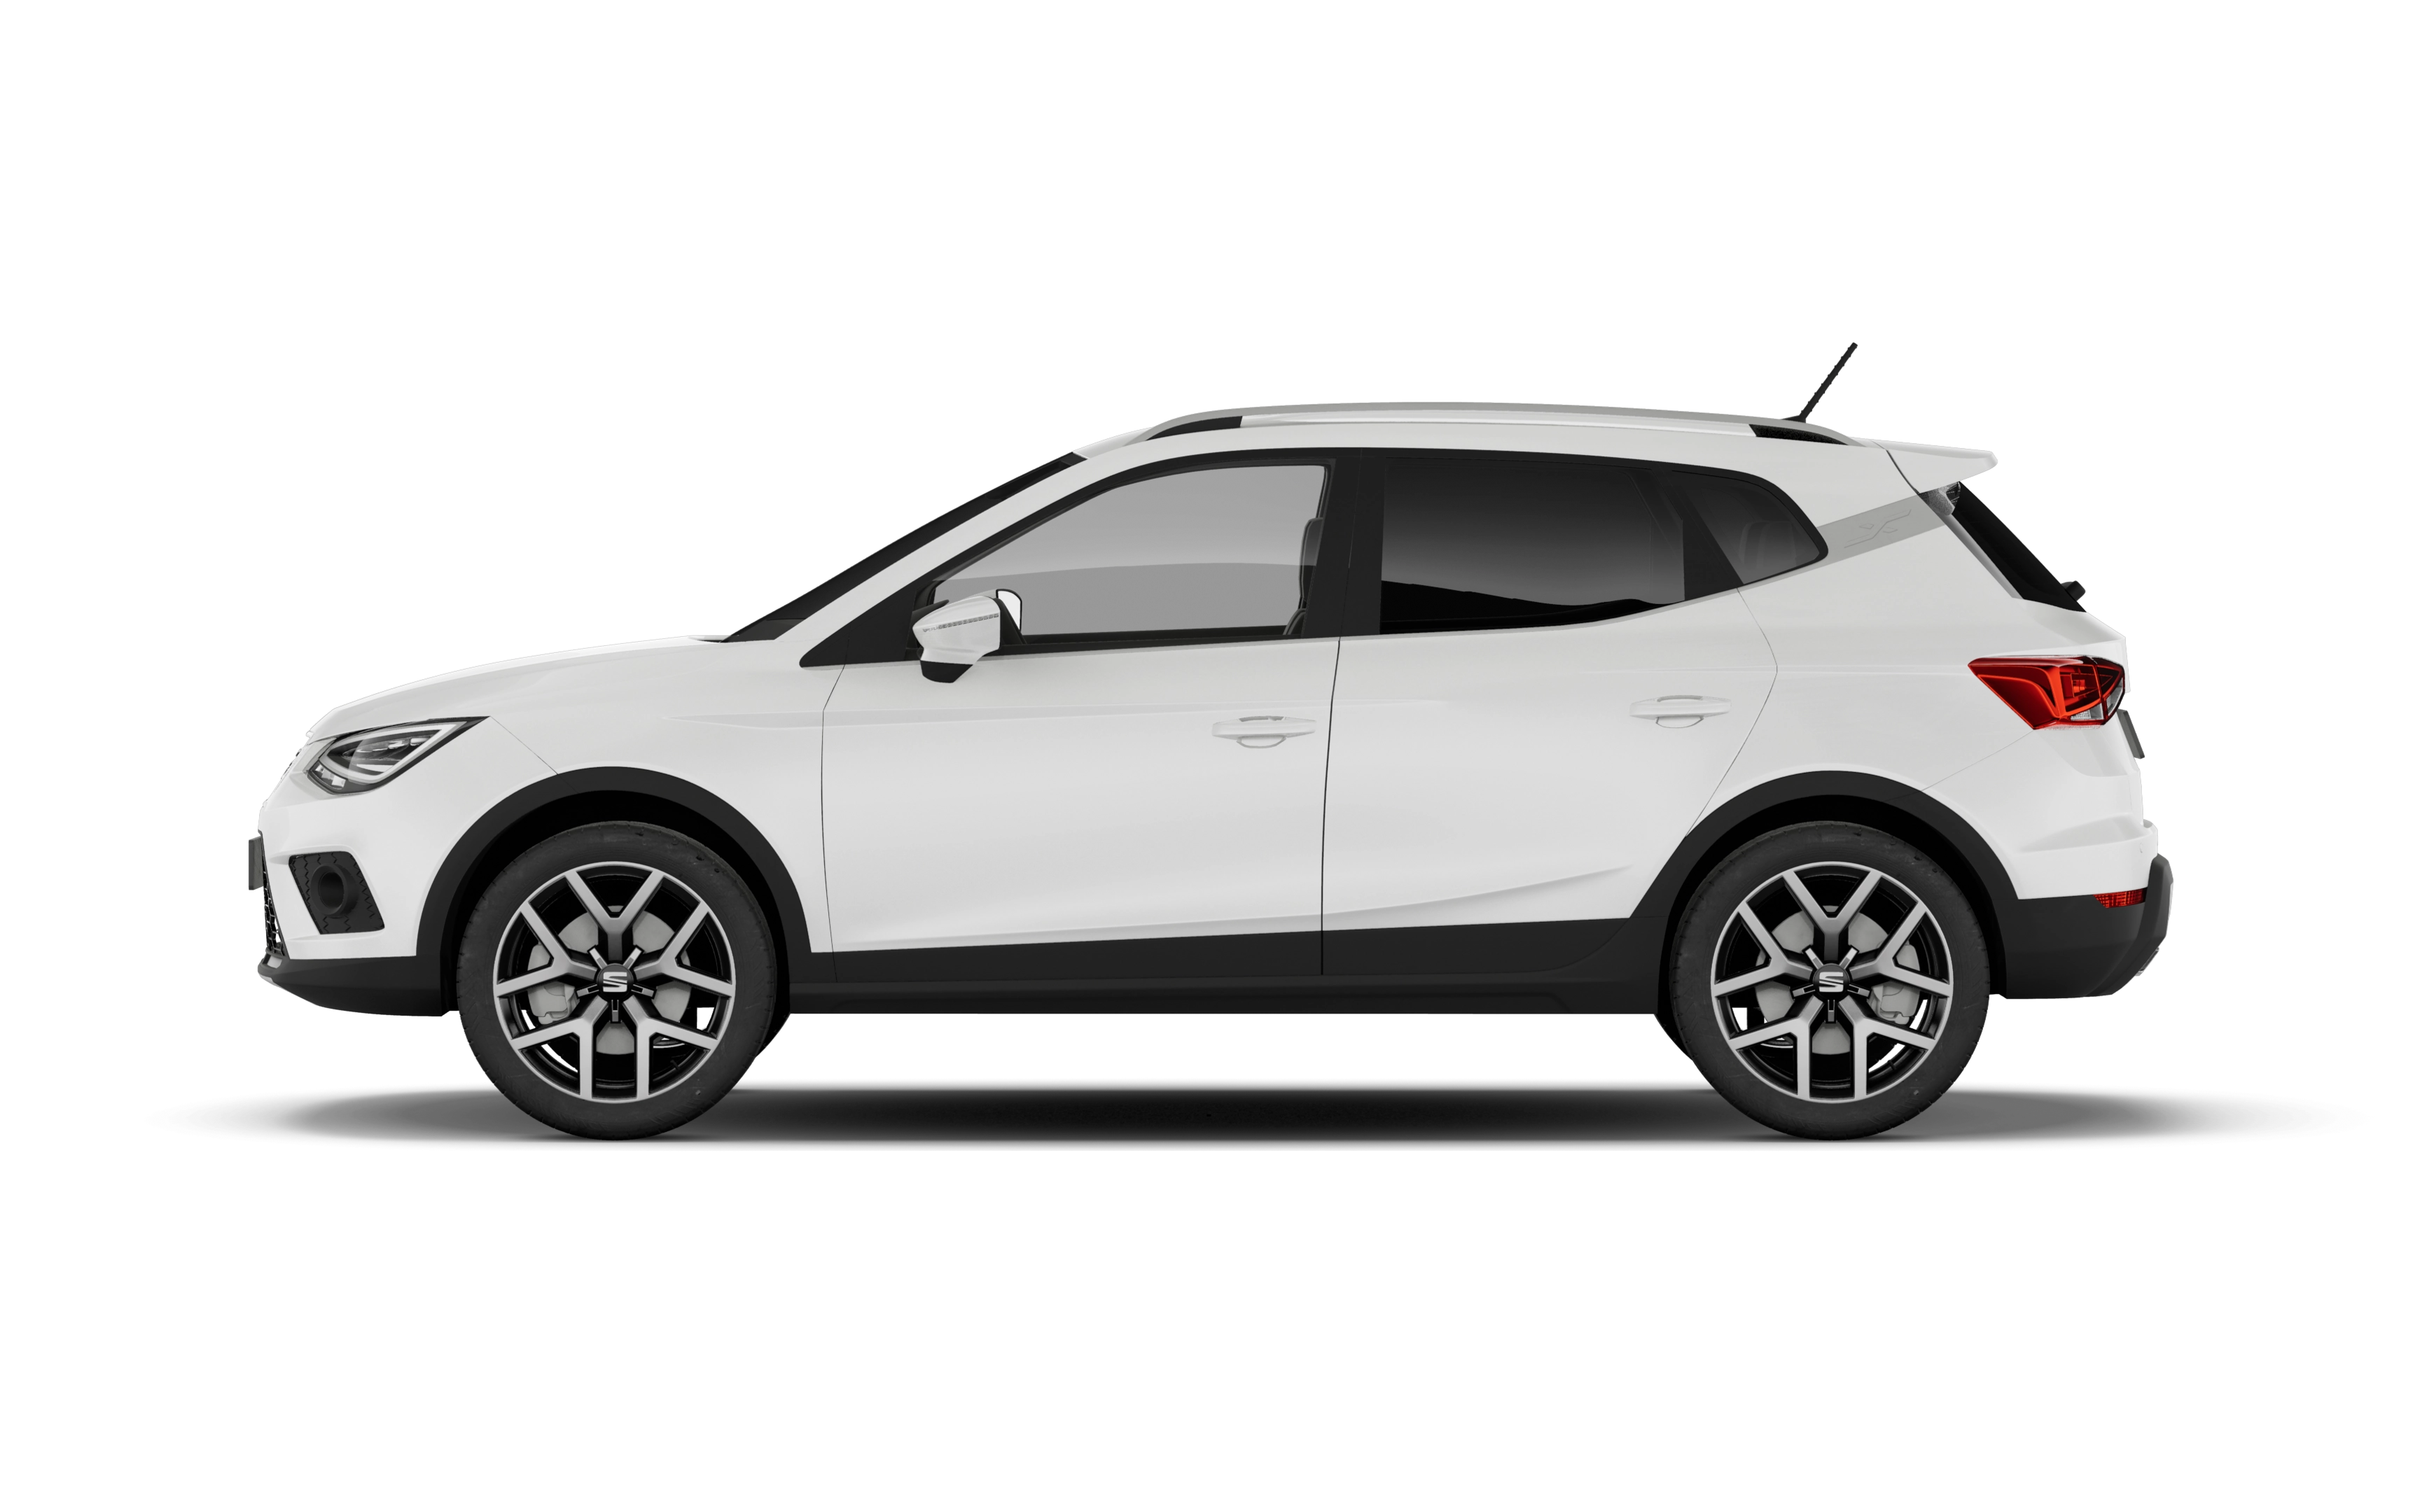 Seat arona hatchback 1.0 tsi 115 fr 5 doors